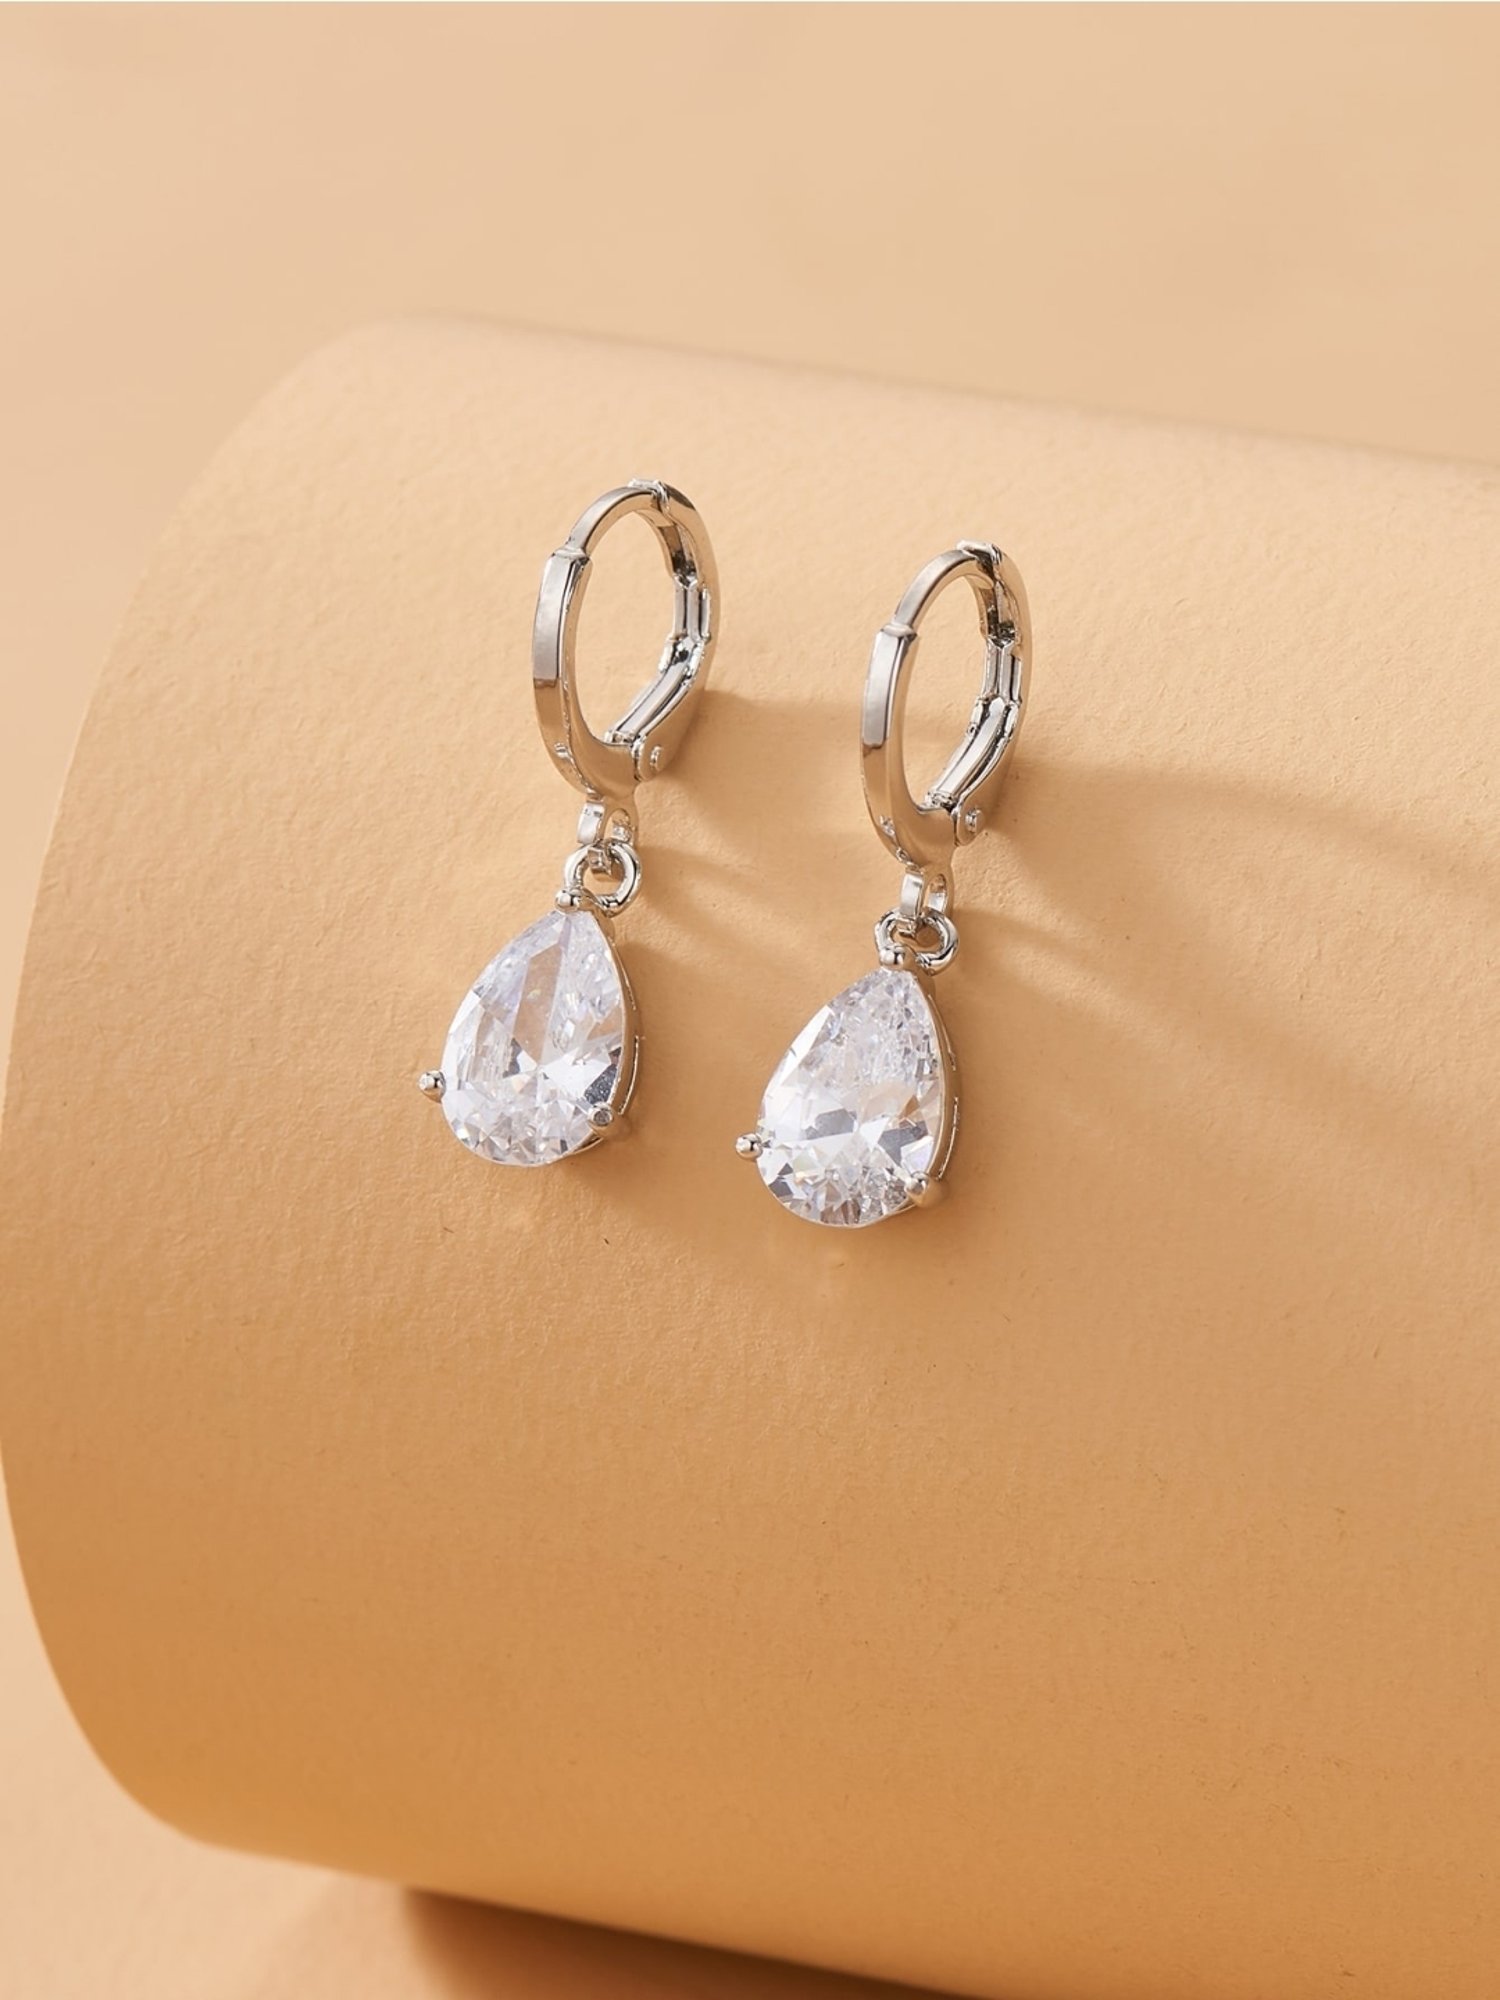 Silver Dripping Earrings | En Route Jewelry